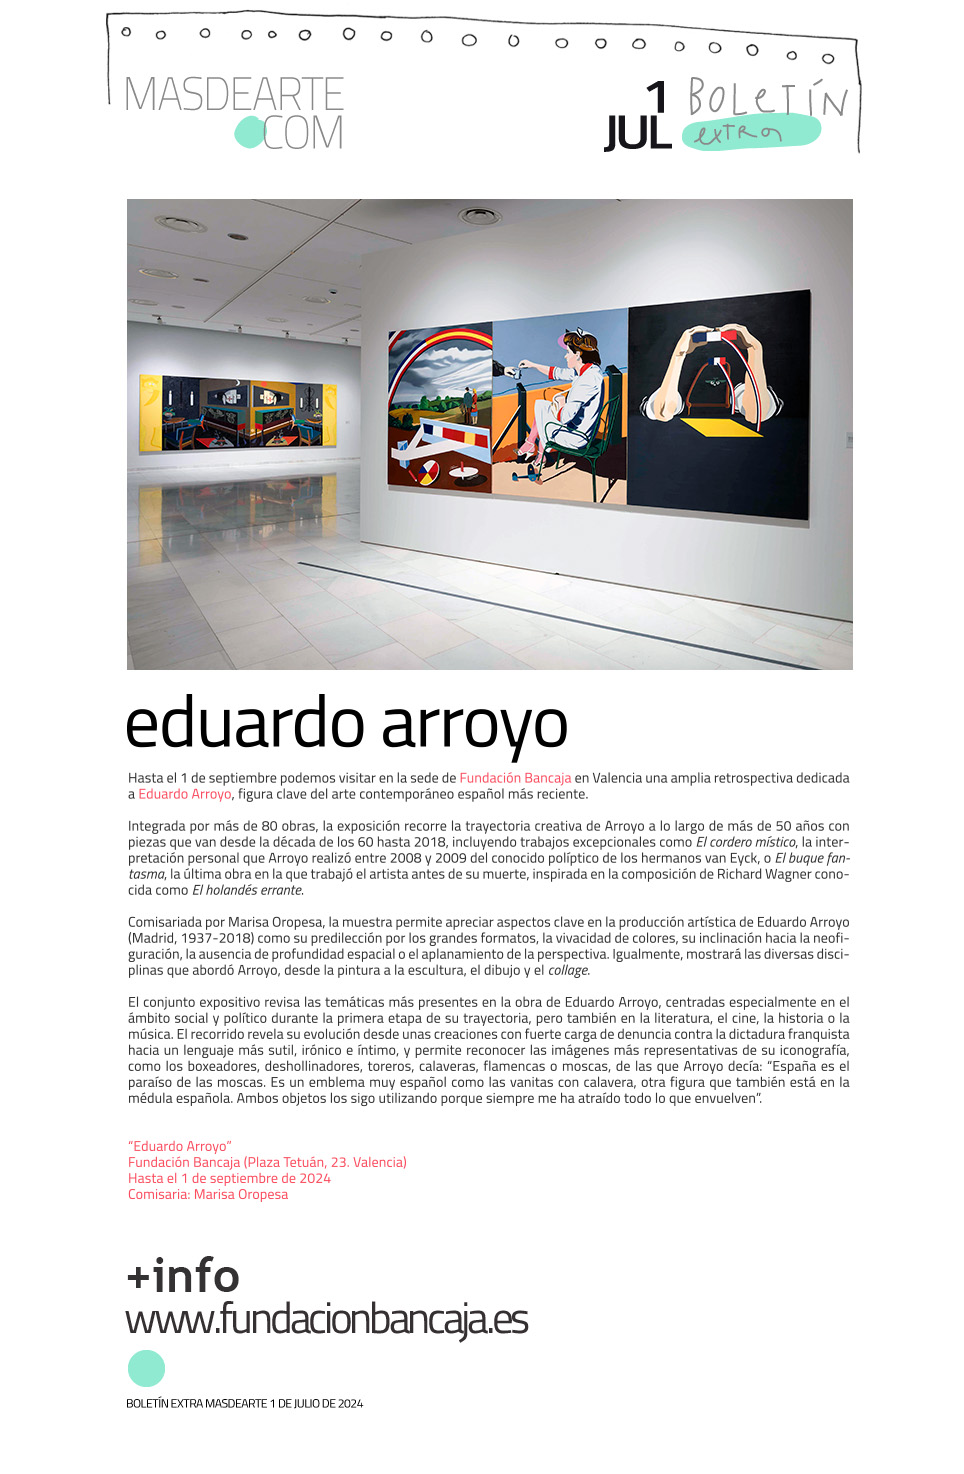 Extra masdearte: Eduardo Arroyo. Gran exposición en Fundación Bancaja